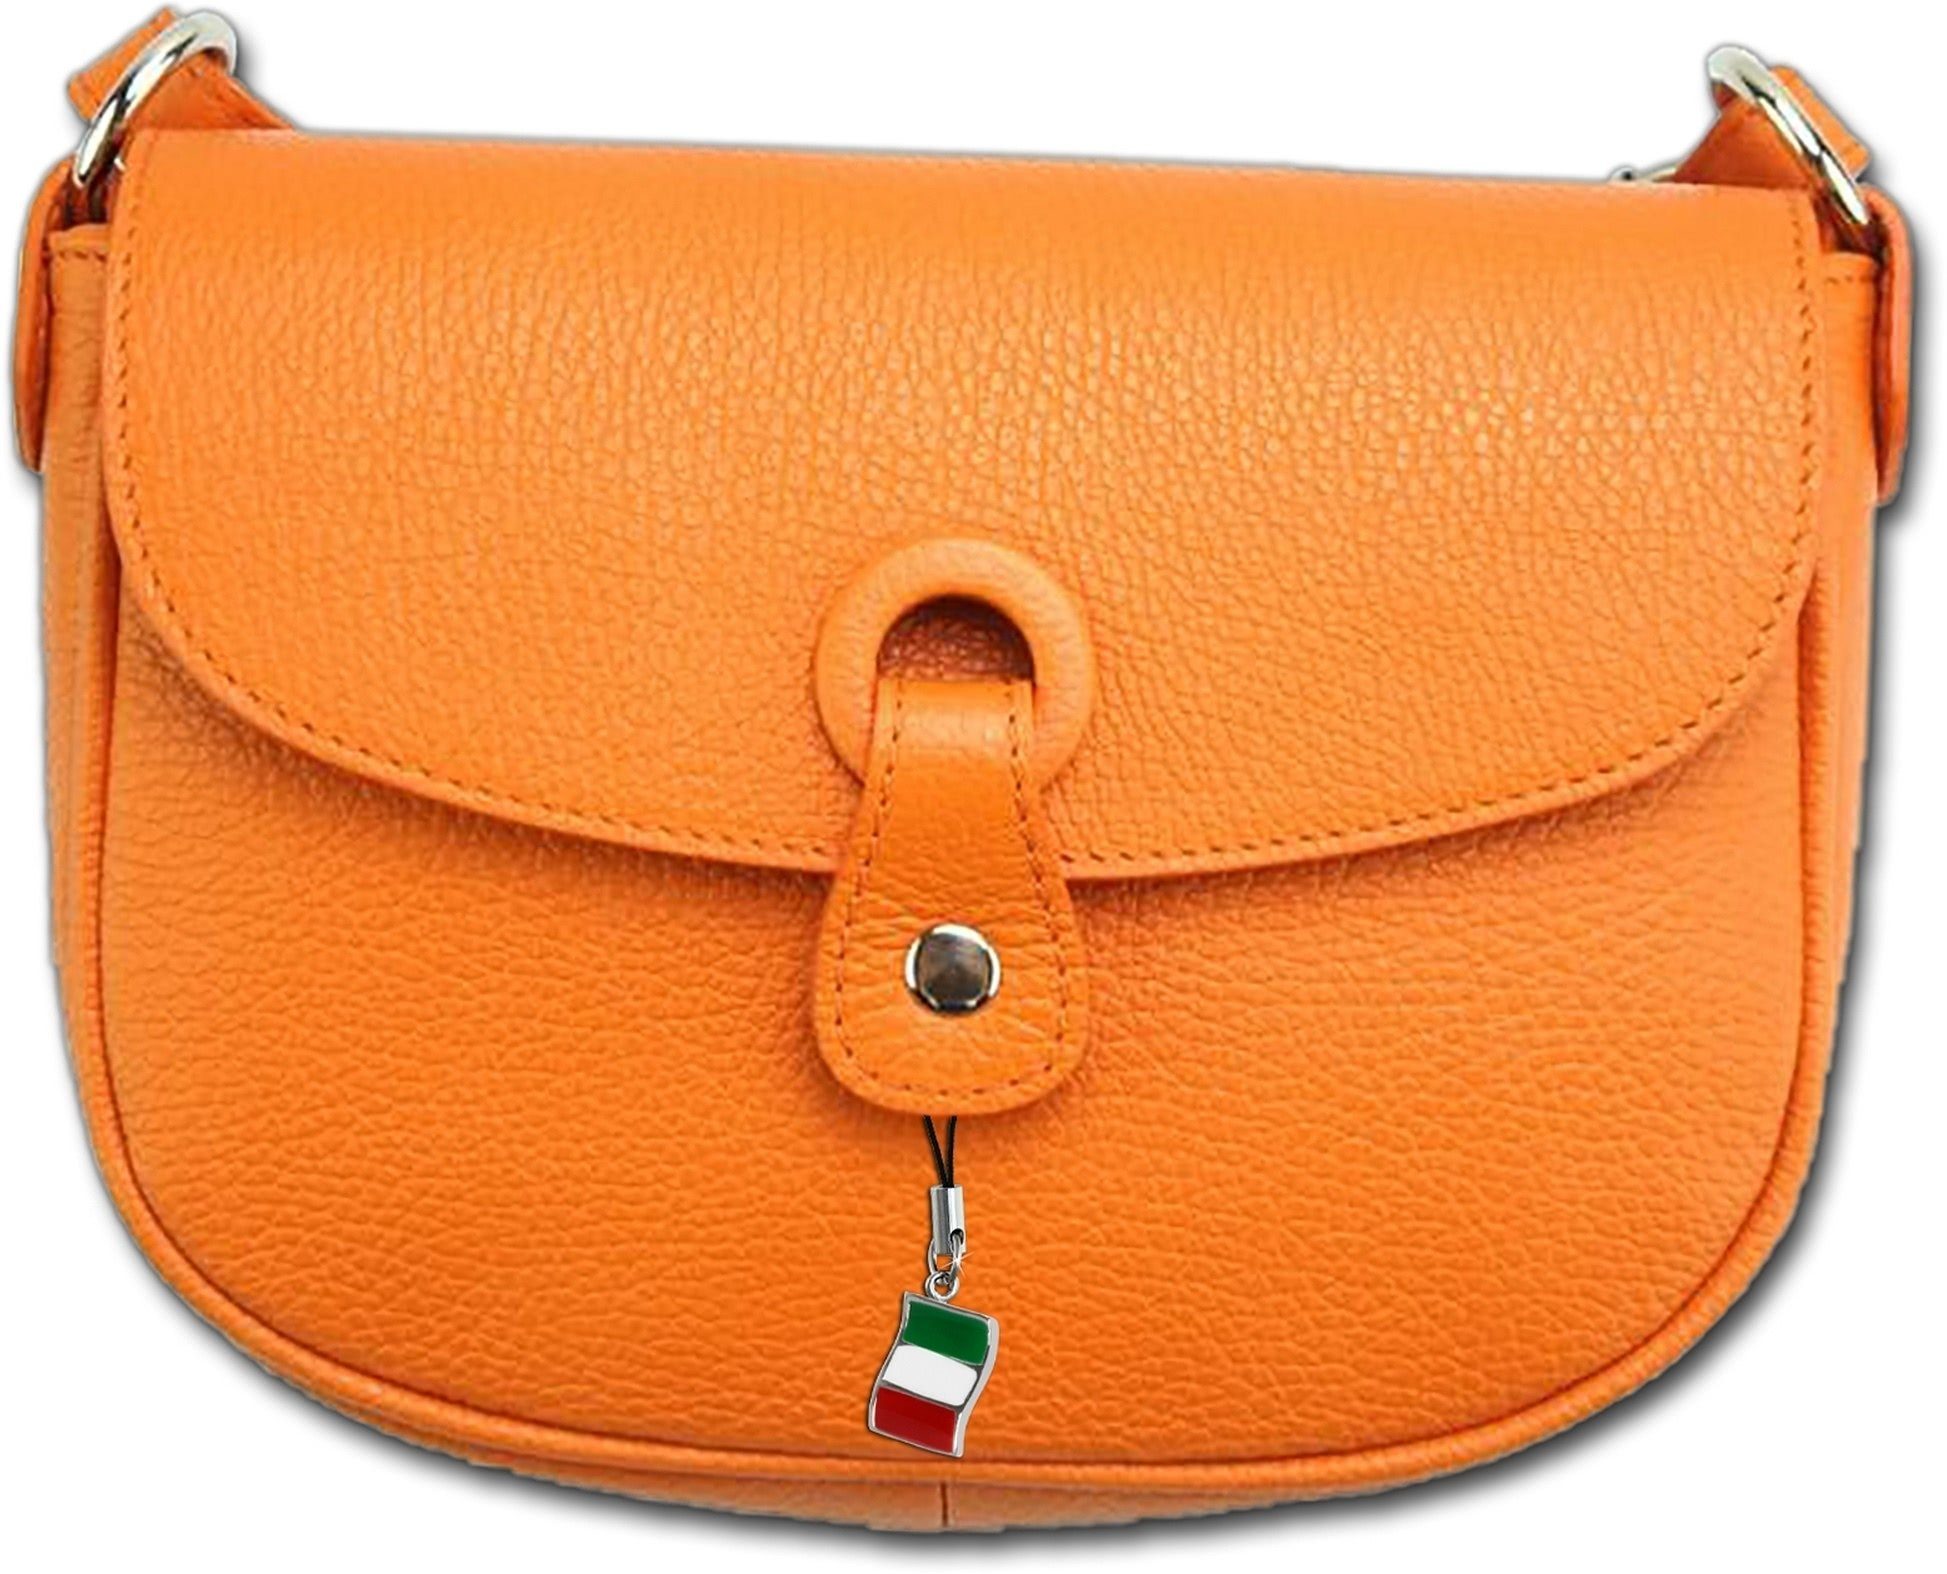 FLORENCE Umhängetasche Florence Leder Damen Handtasche orange, Damen Tasche  Echtleder orange, Made-In Italy